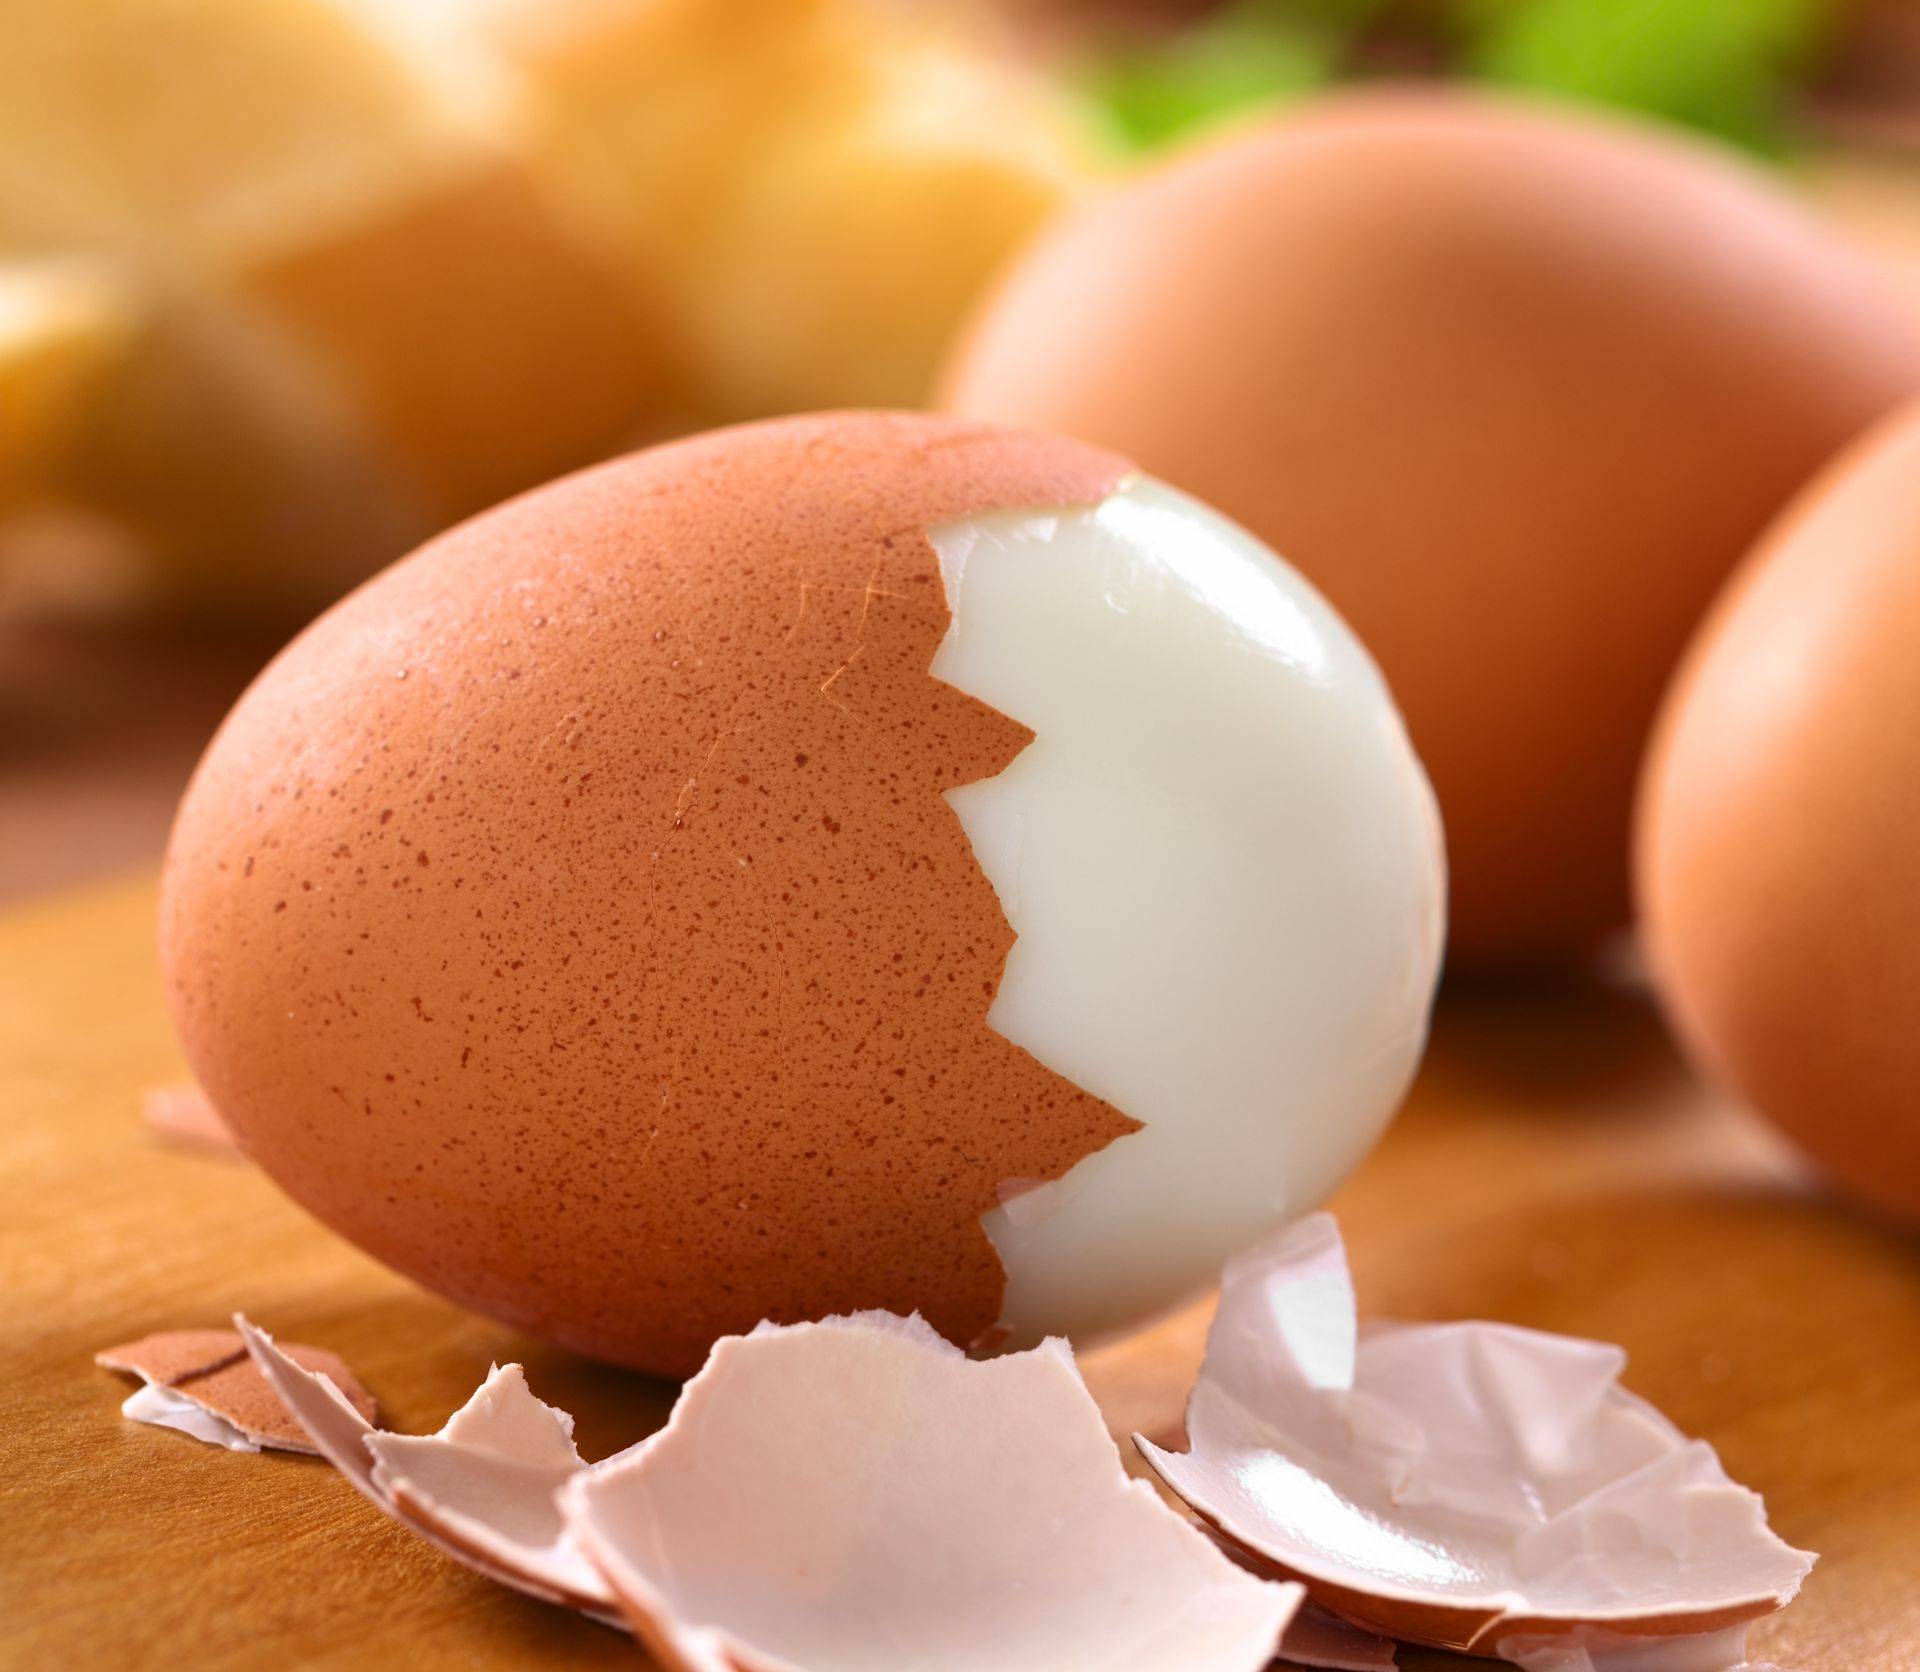 Stavljate li jaja u vodu odmah ili kad voda zakuha? Razlika u kuhanju je zapravo ogromna